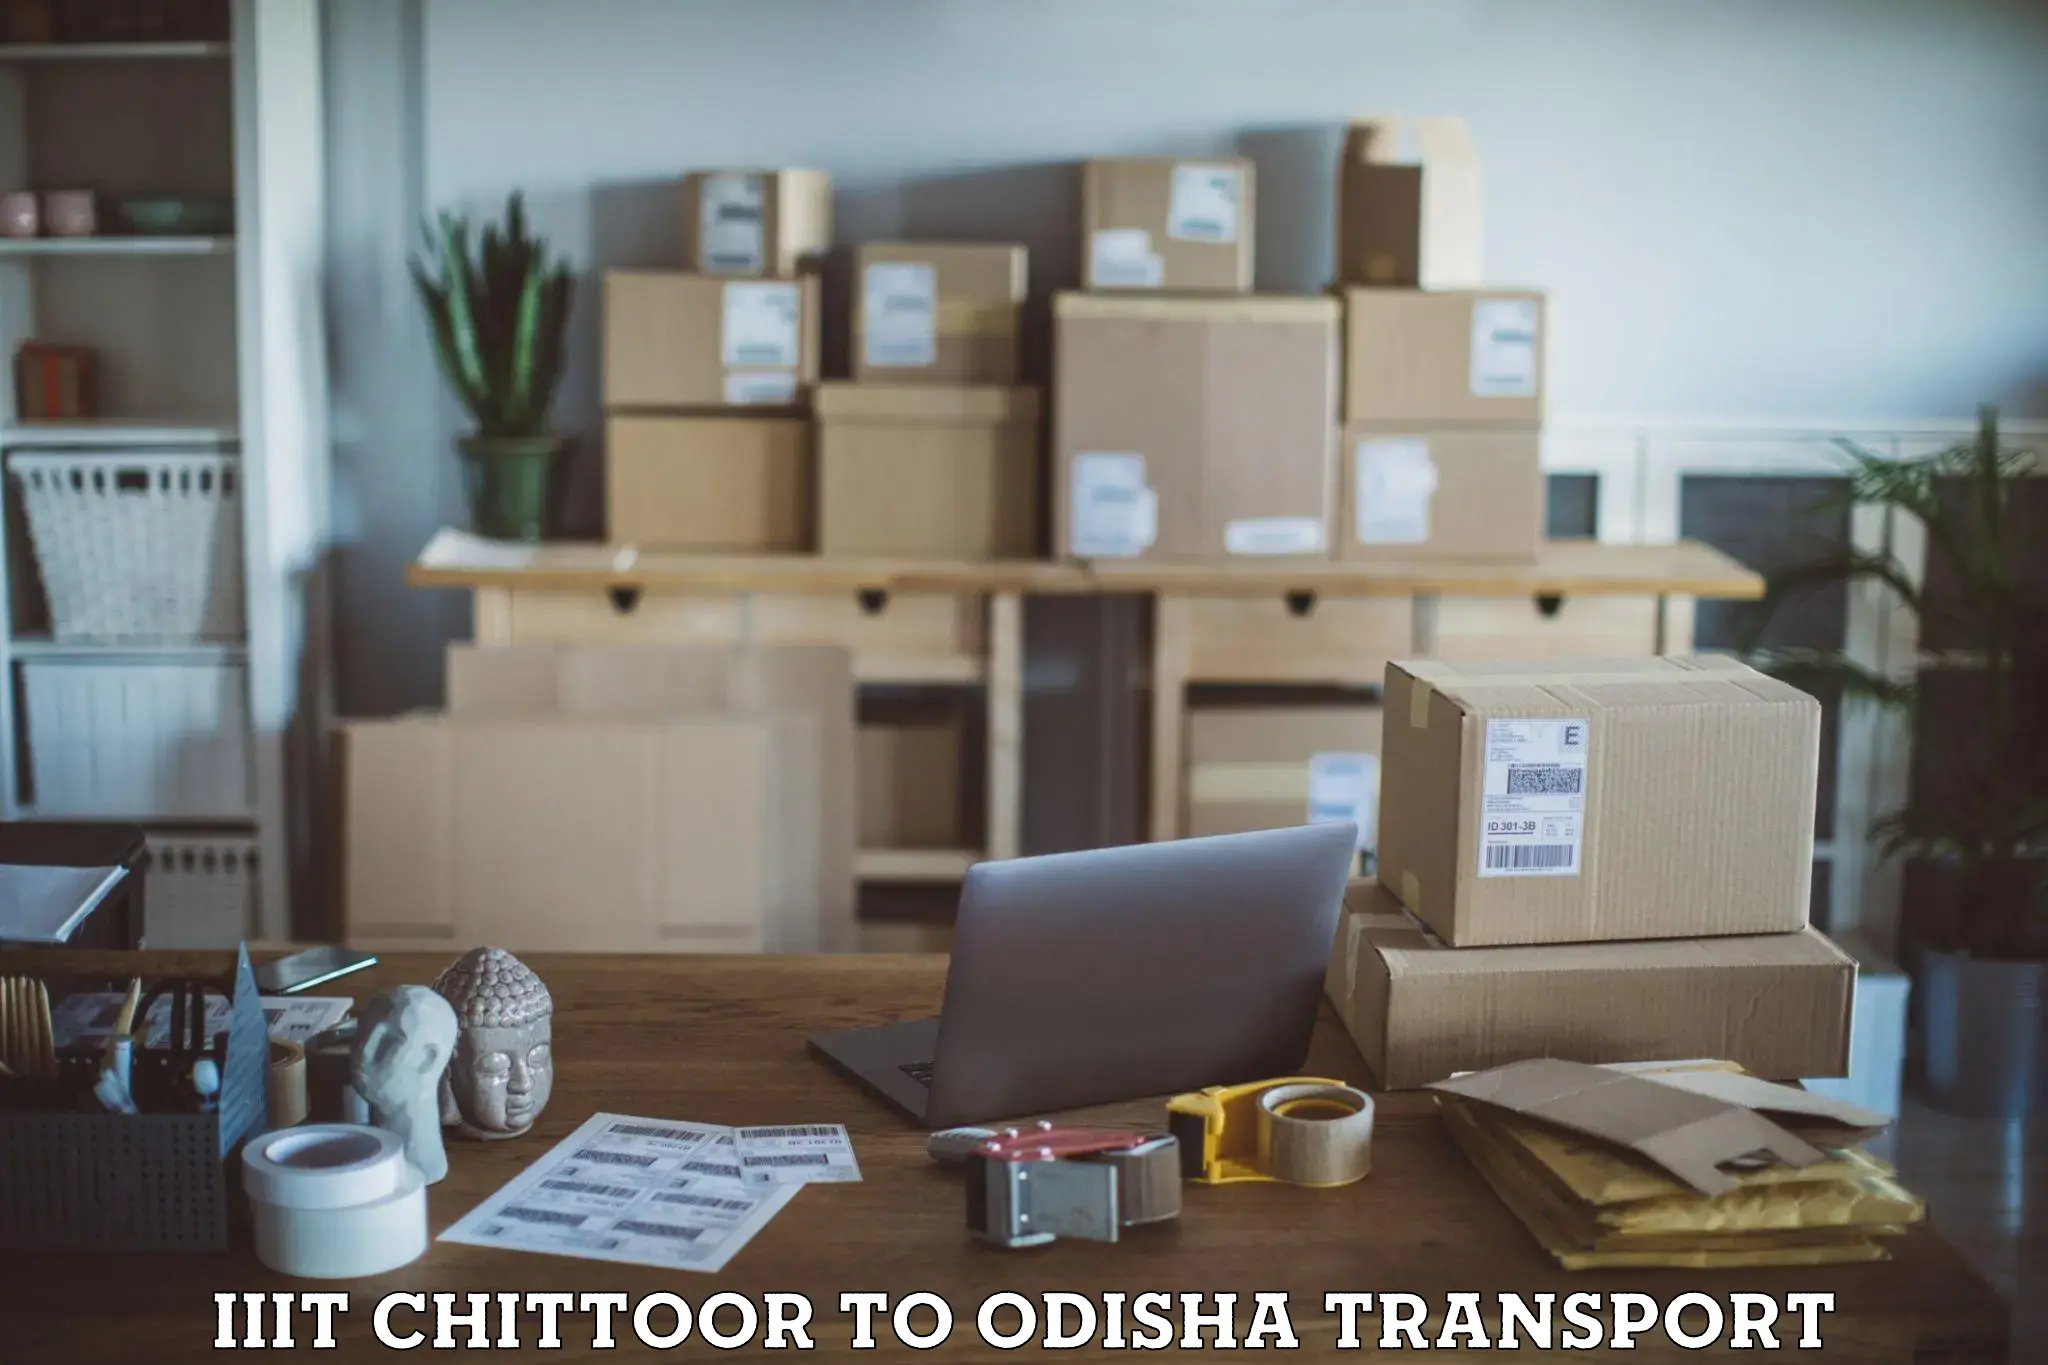 Land transport services IIIT Chittoor to Melchhamunda